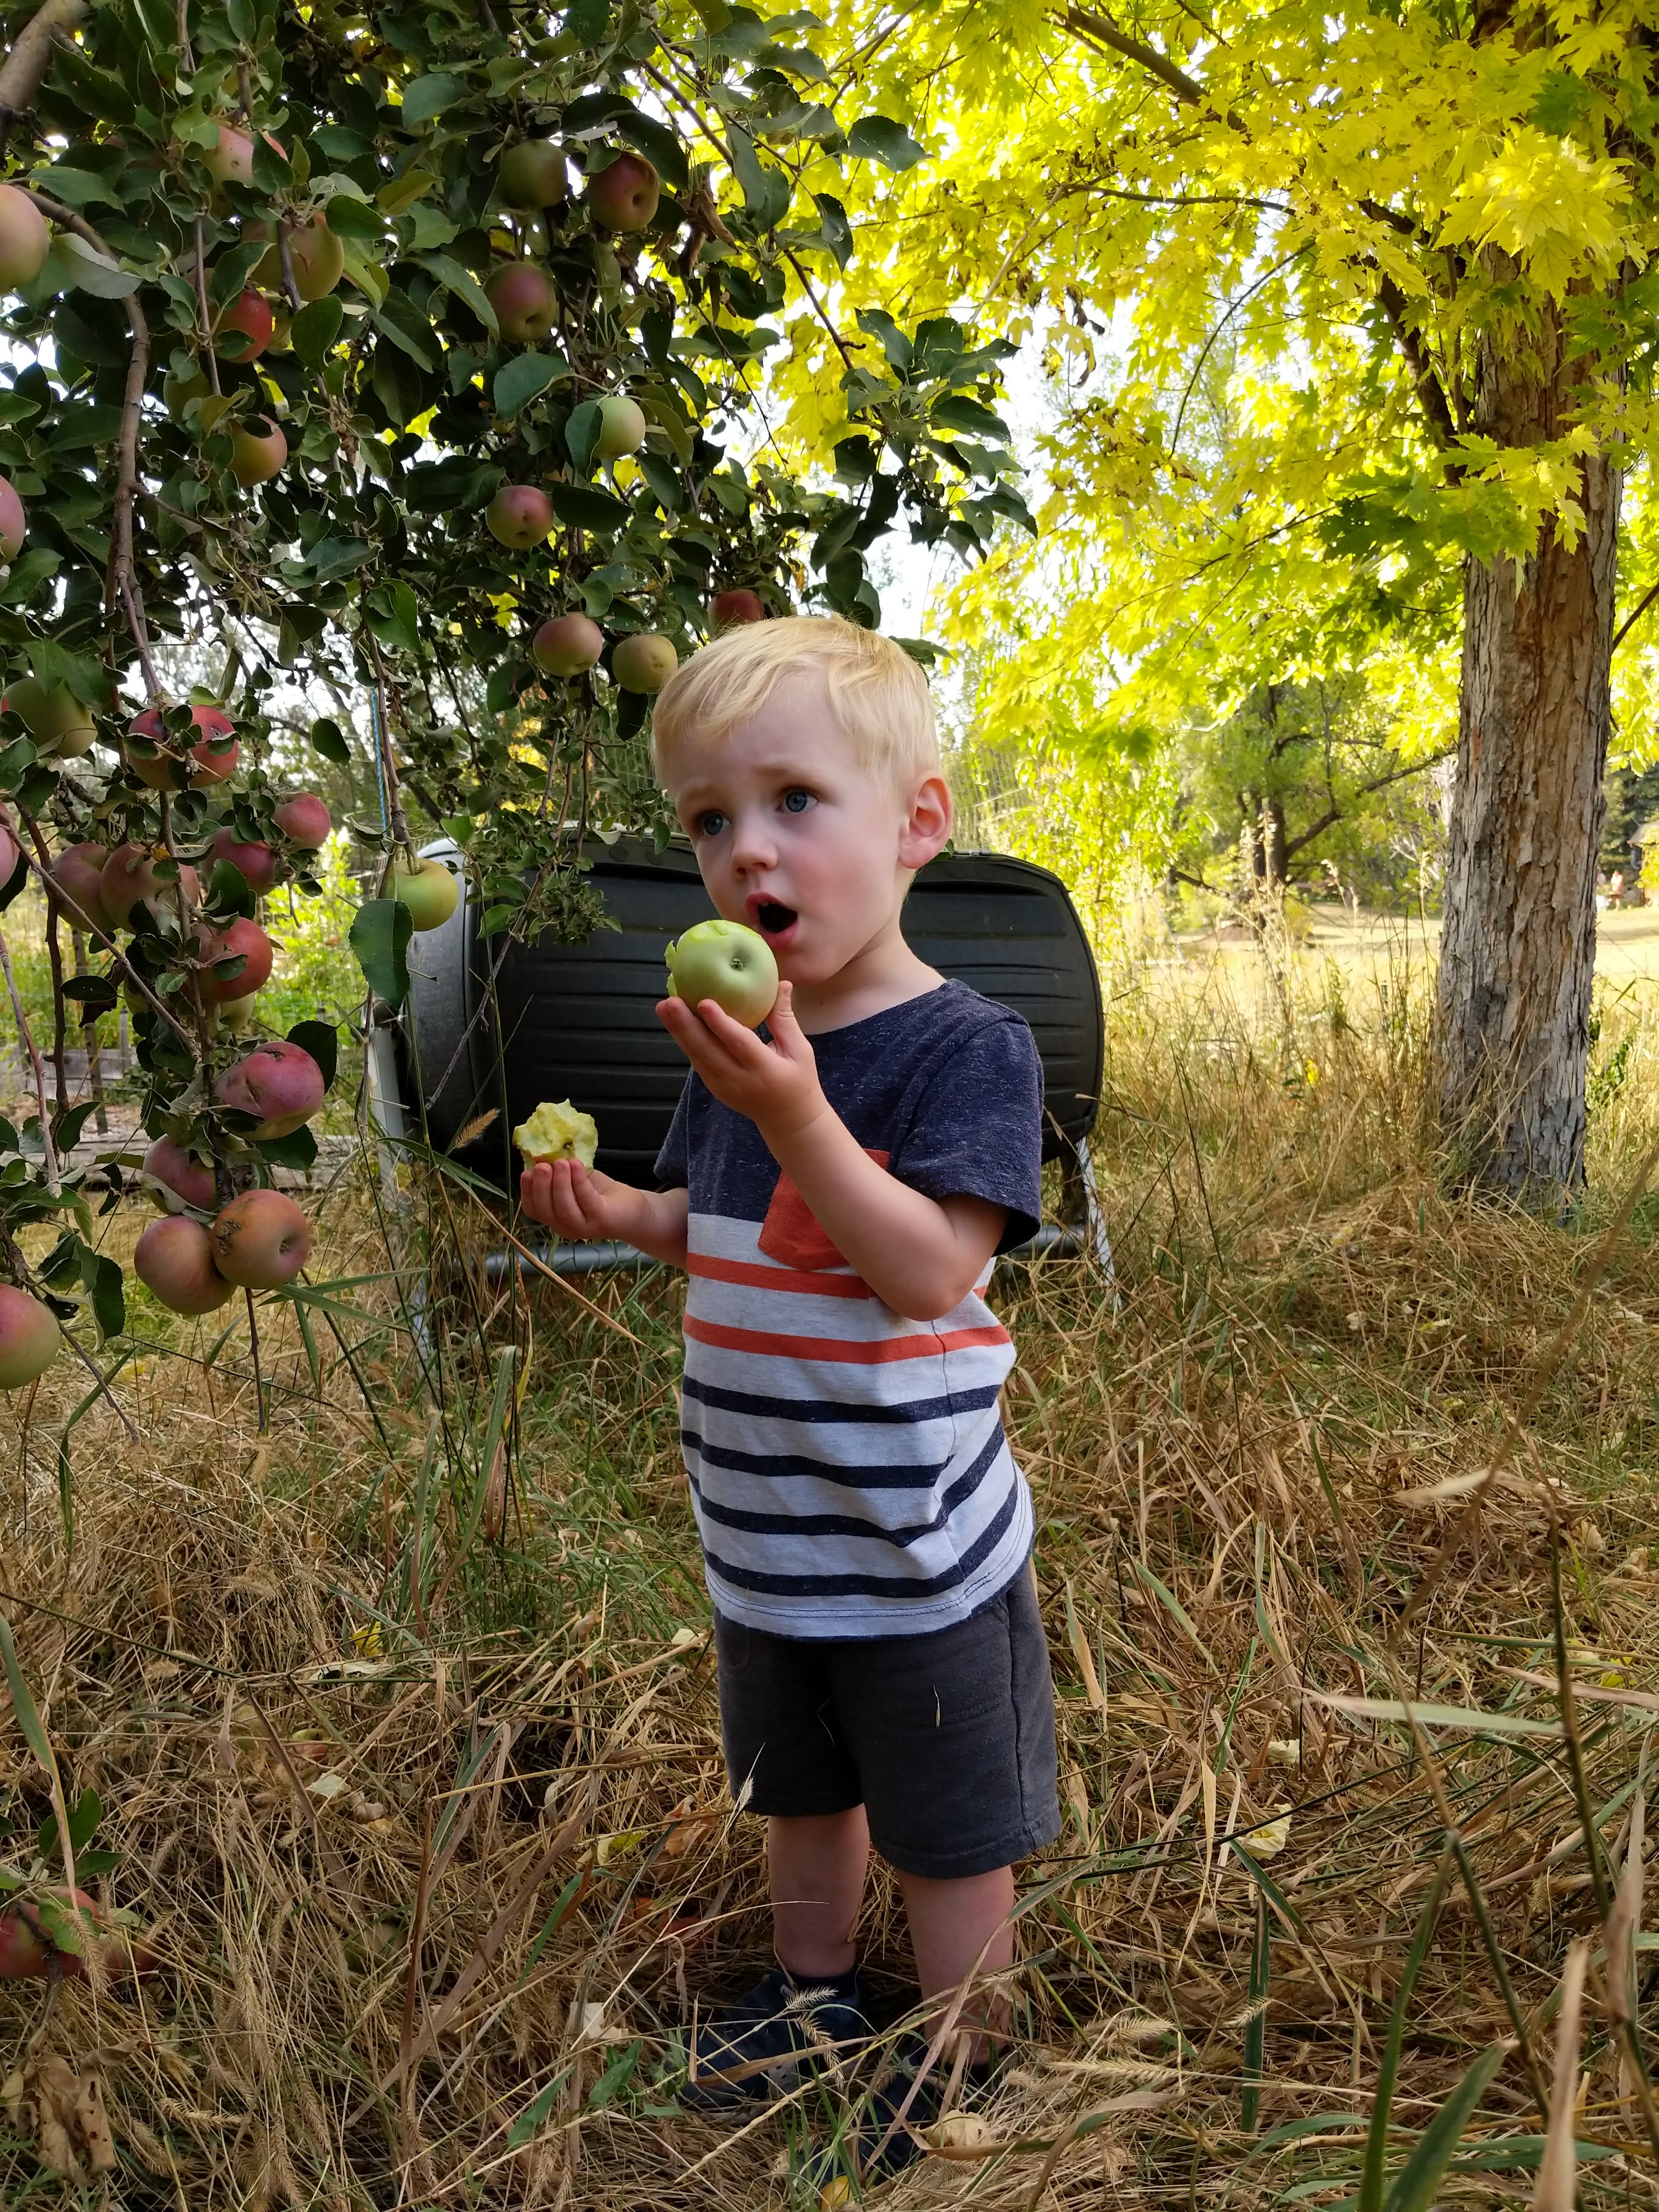 Owen eating an apple